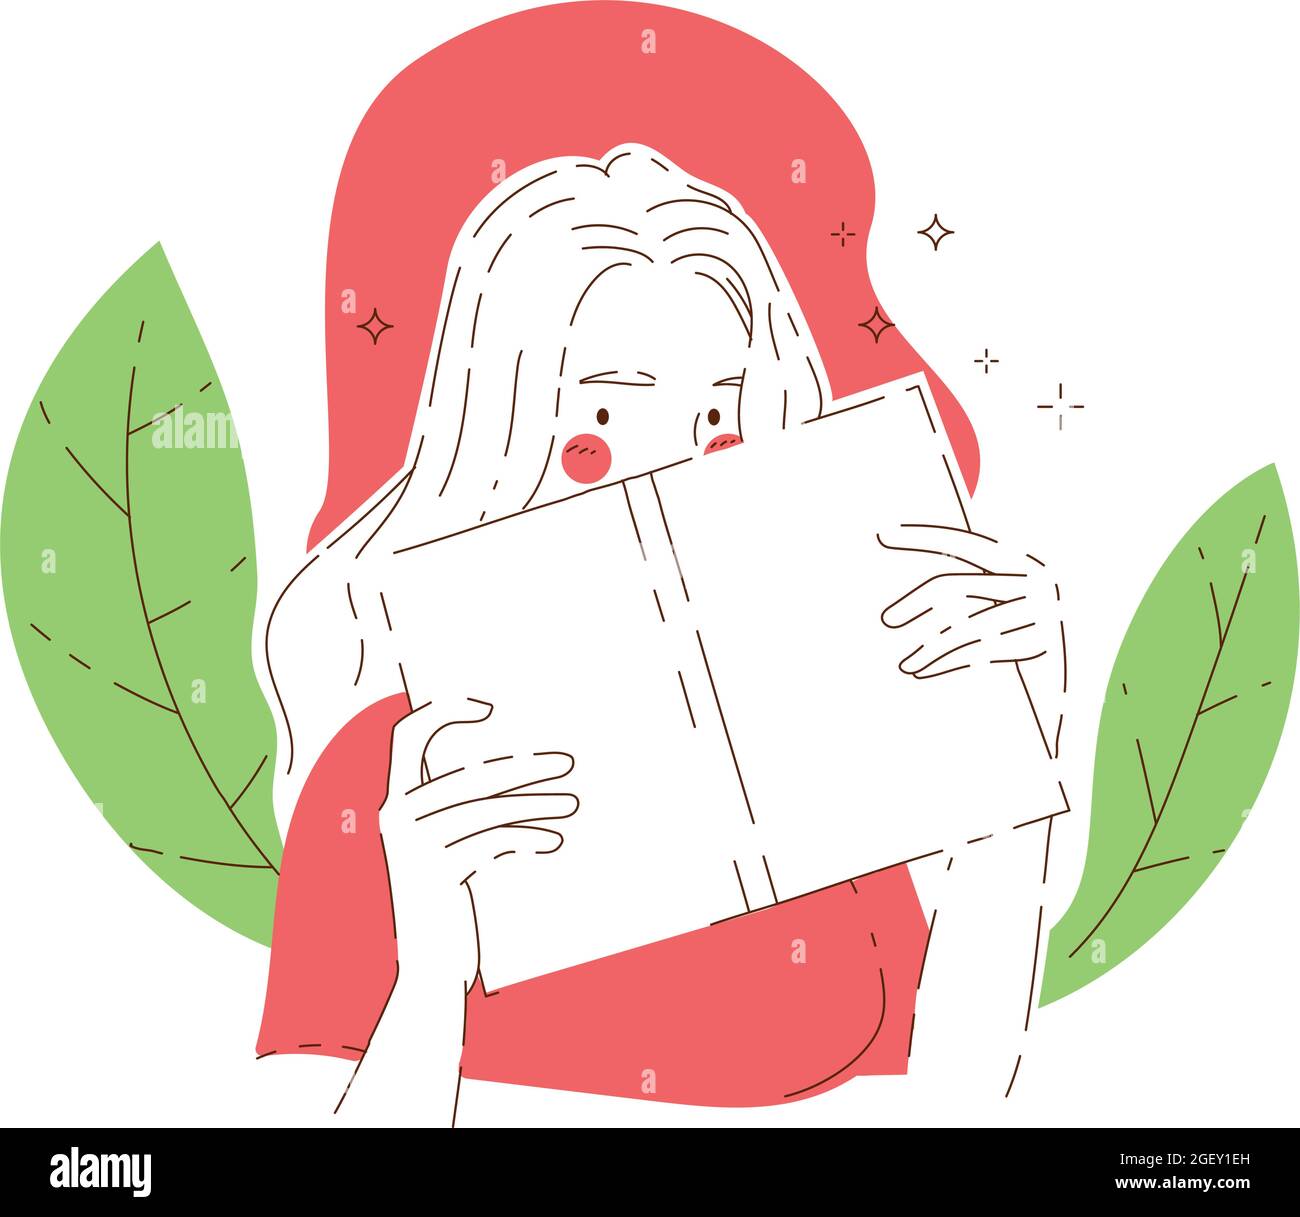 Frau gucke von hinten geöffnetes Buch vor grüne Blätter, die ihr die Hälfte ihres Gesichts zeigen. Handgezeichnete Vektorgrafik-Illustrationen. Stock Vektor